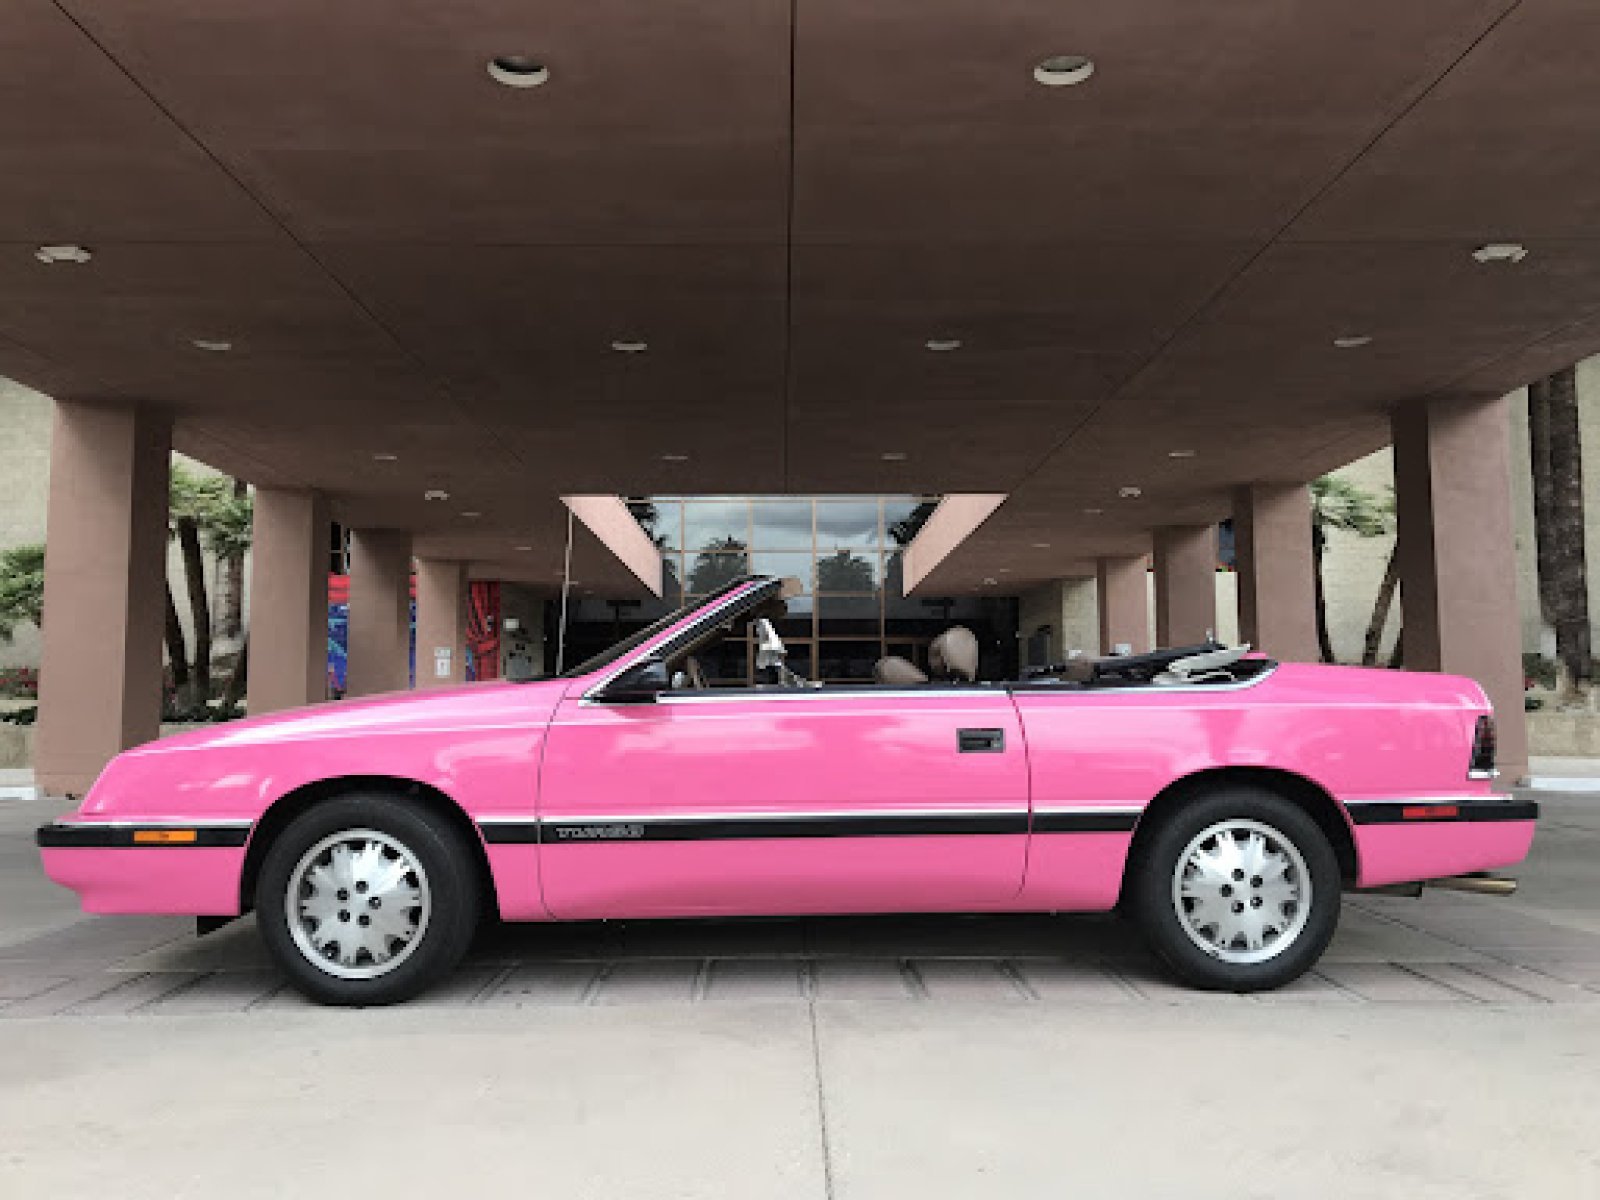 1988 Chrysler Le Baron